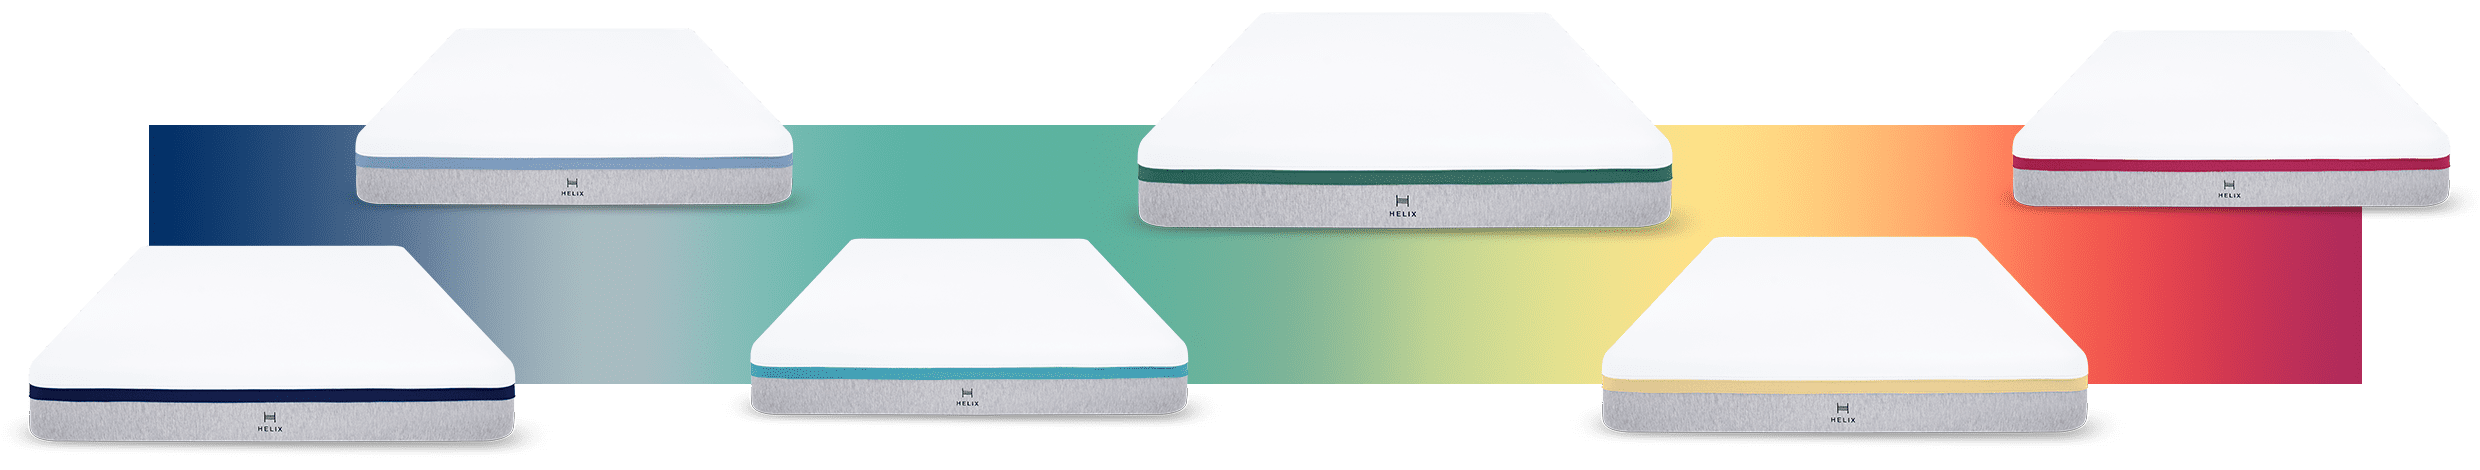 series of mattresses along a spectrum